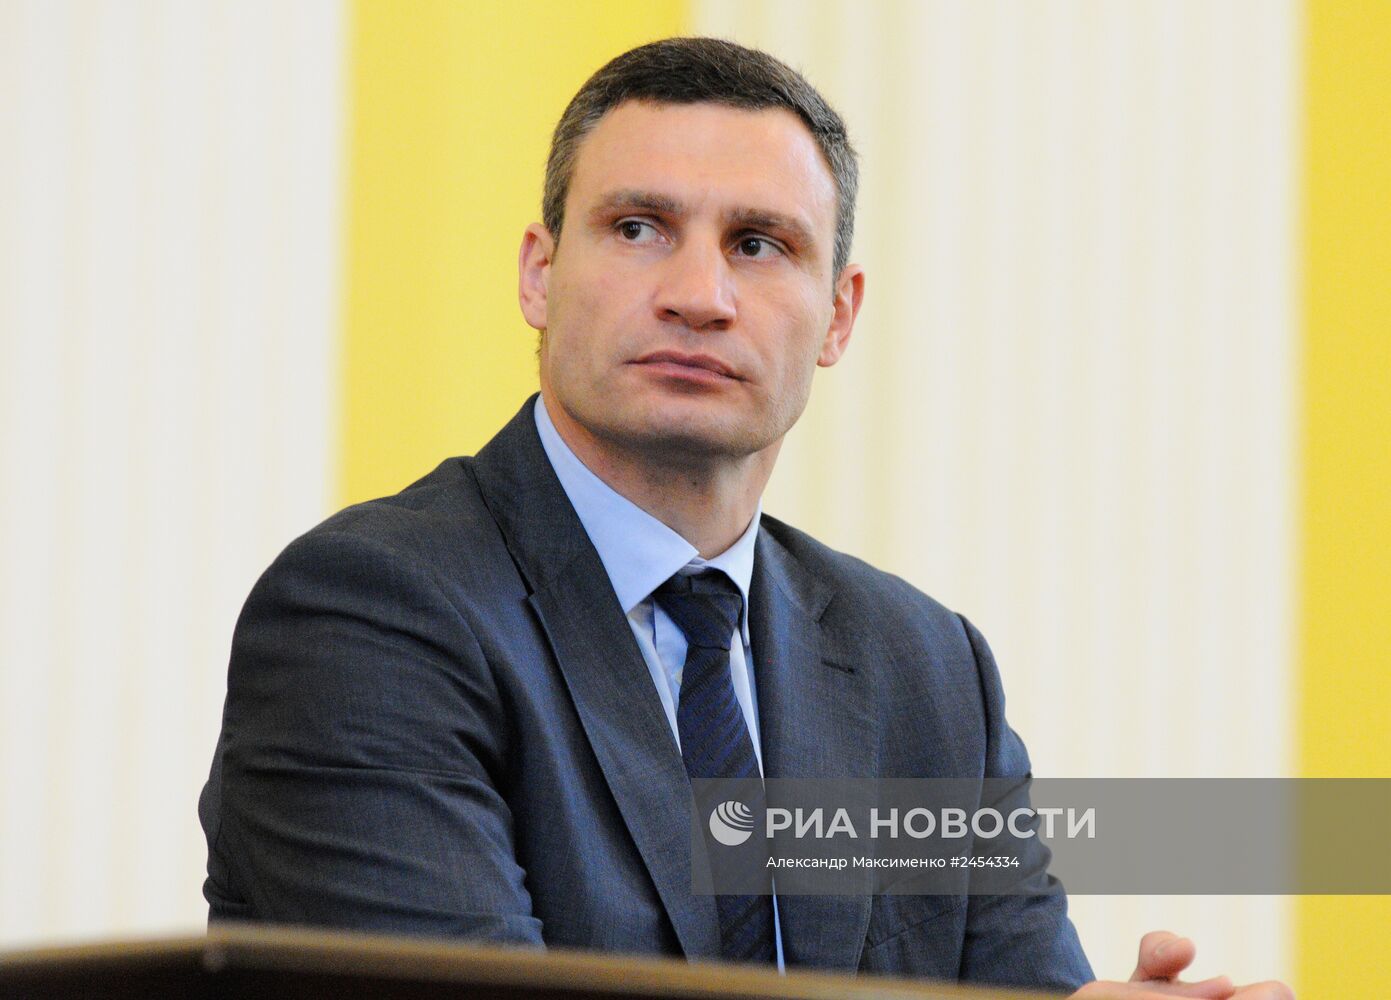 Представление нового председателя Киевской городской государственной администрации В.Кличко